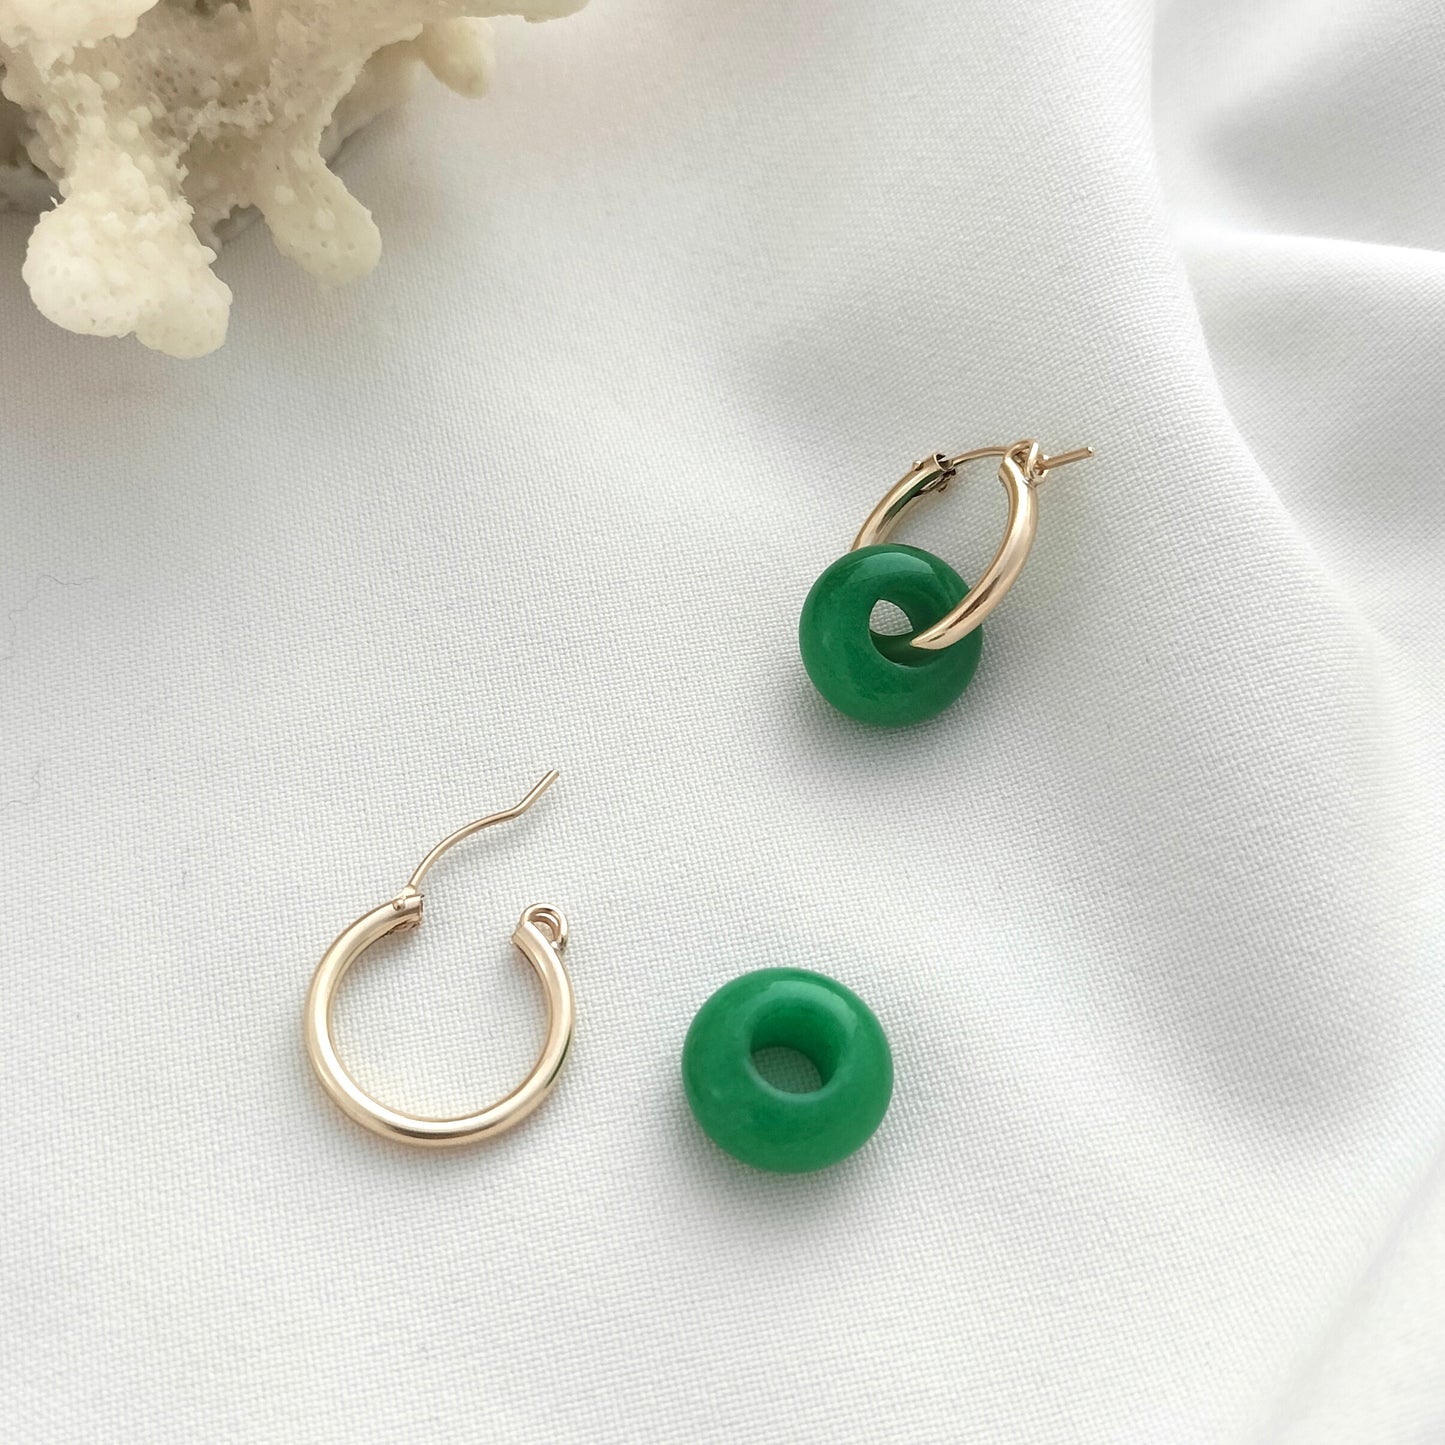 Gold hoop earrings with green jade beads